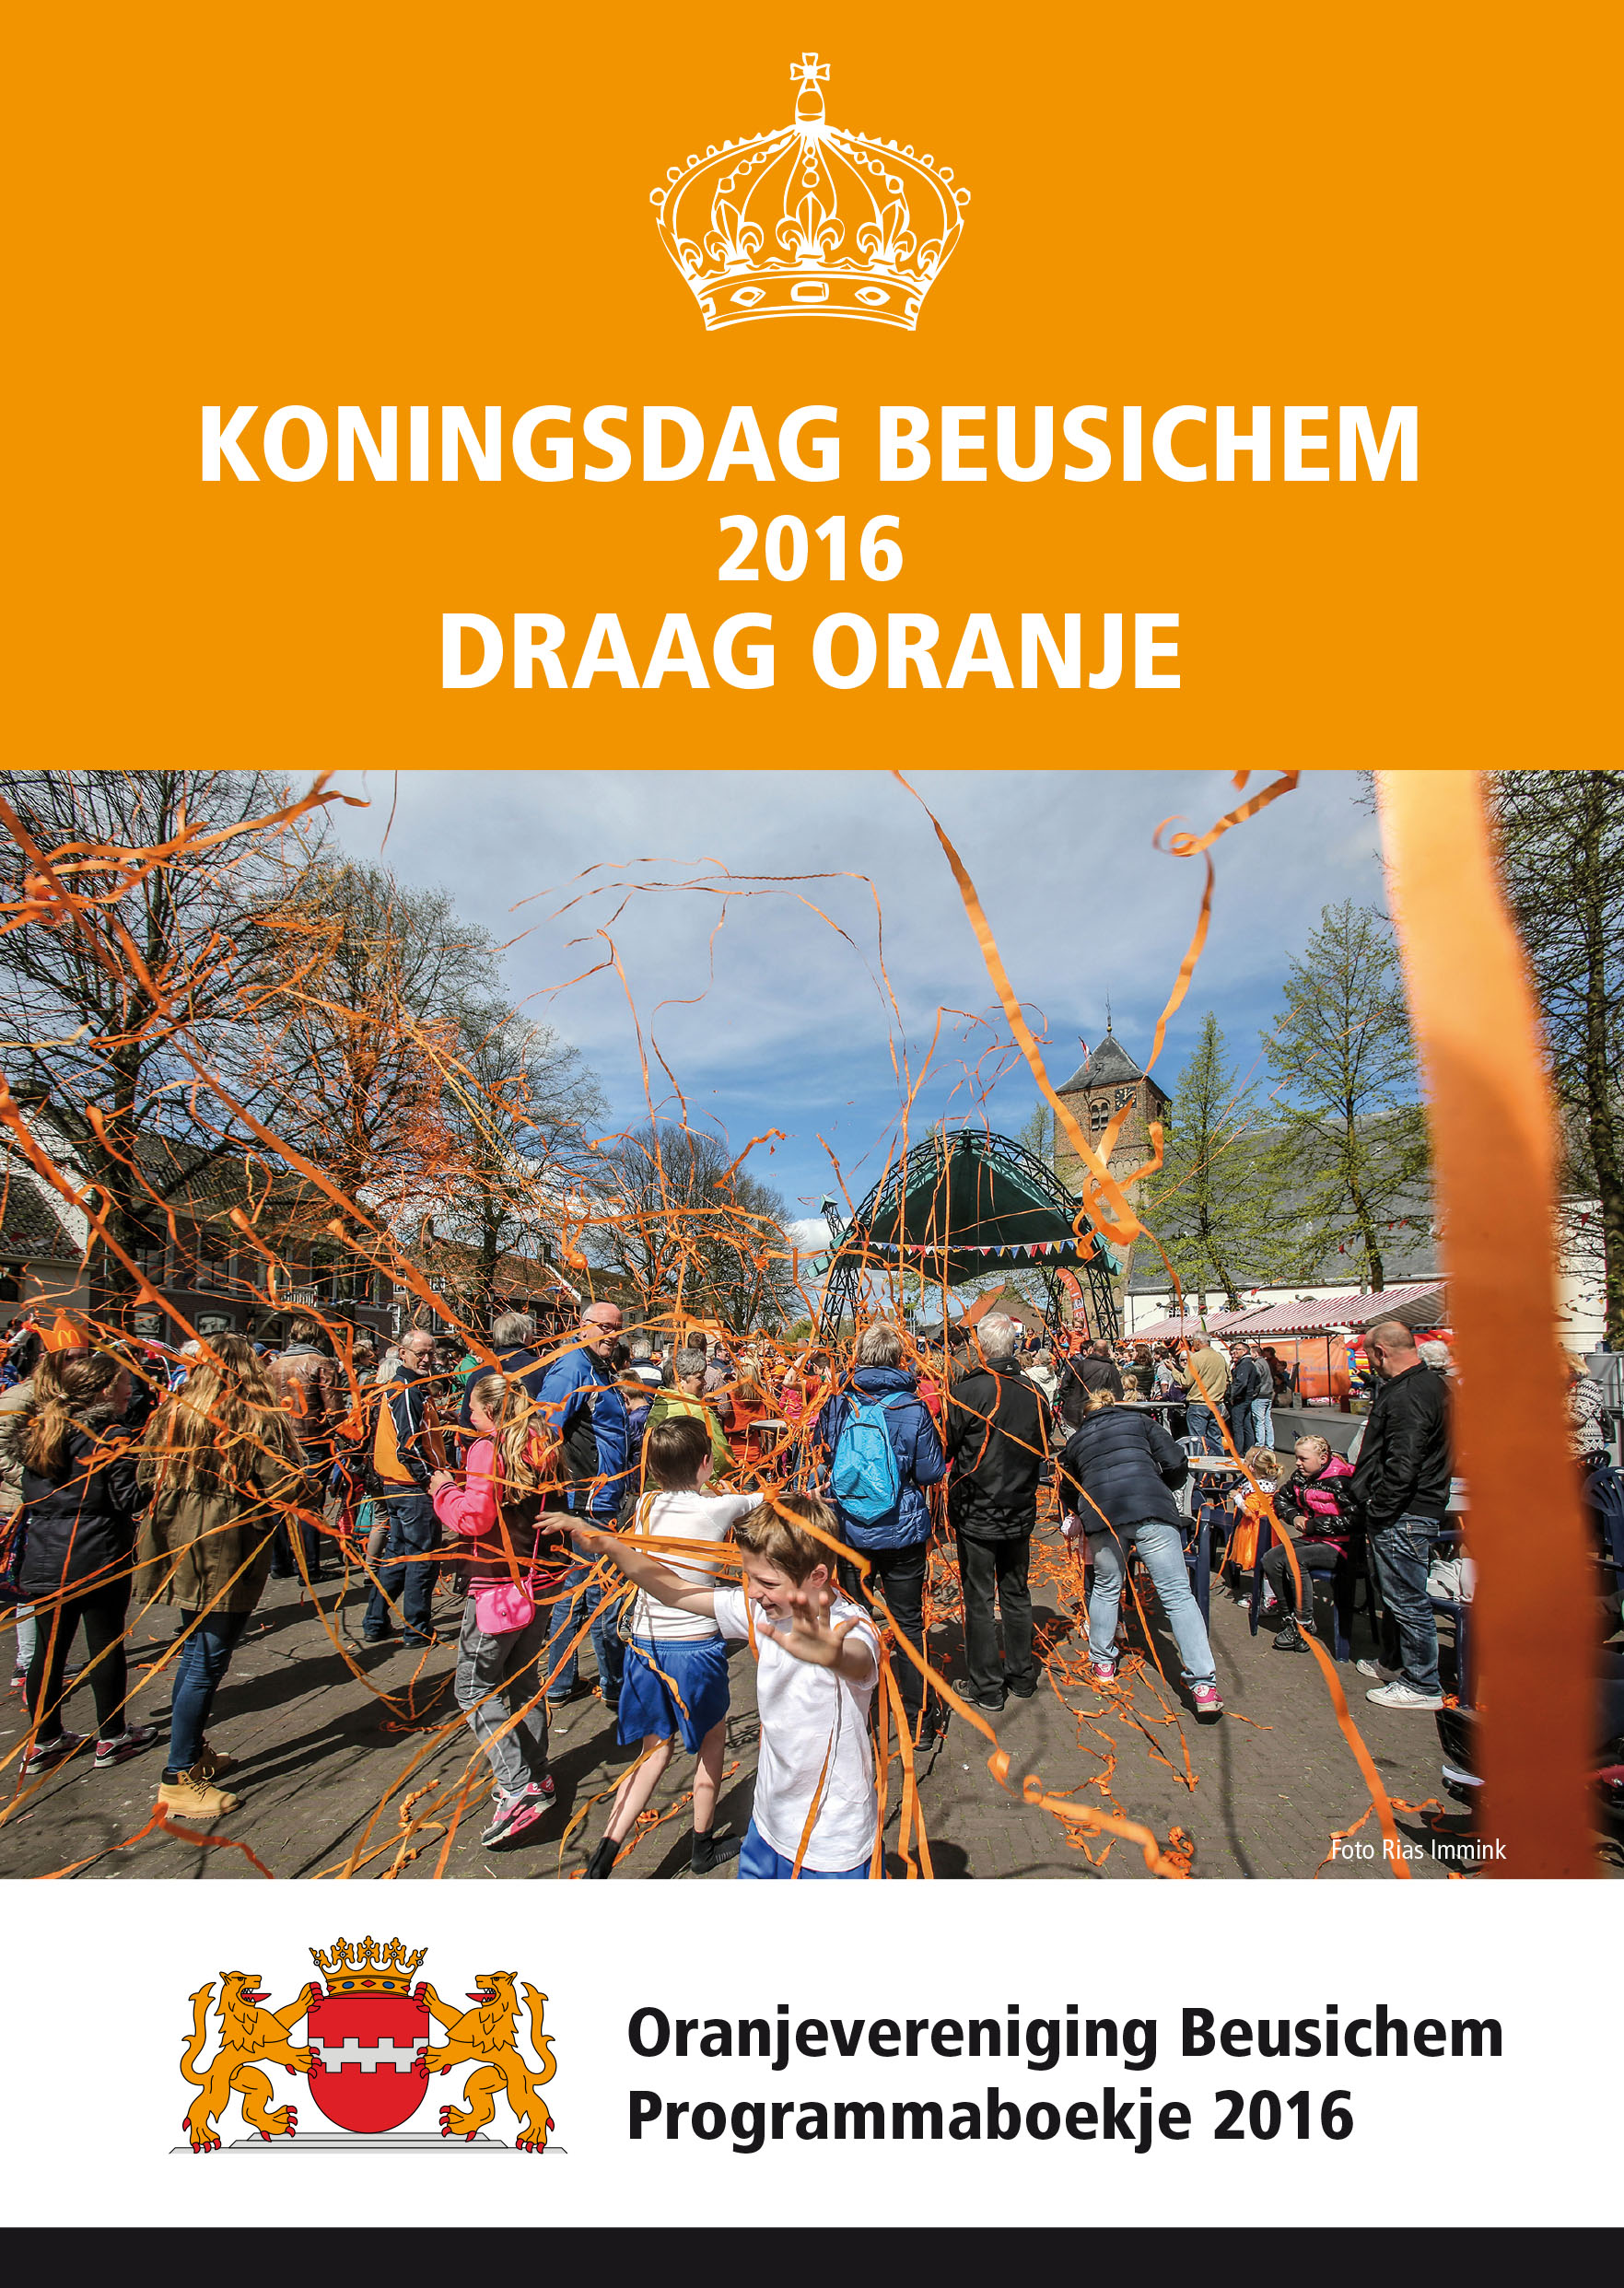 Oranjevereniging boekje 2016